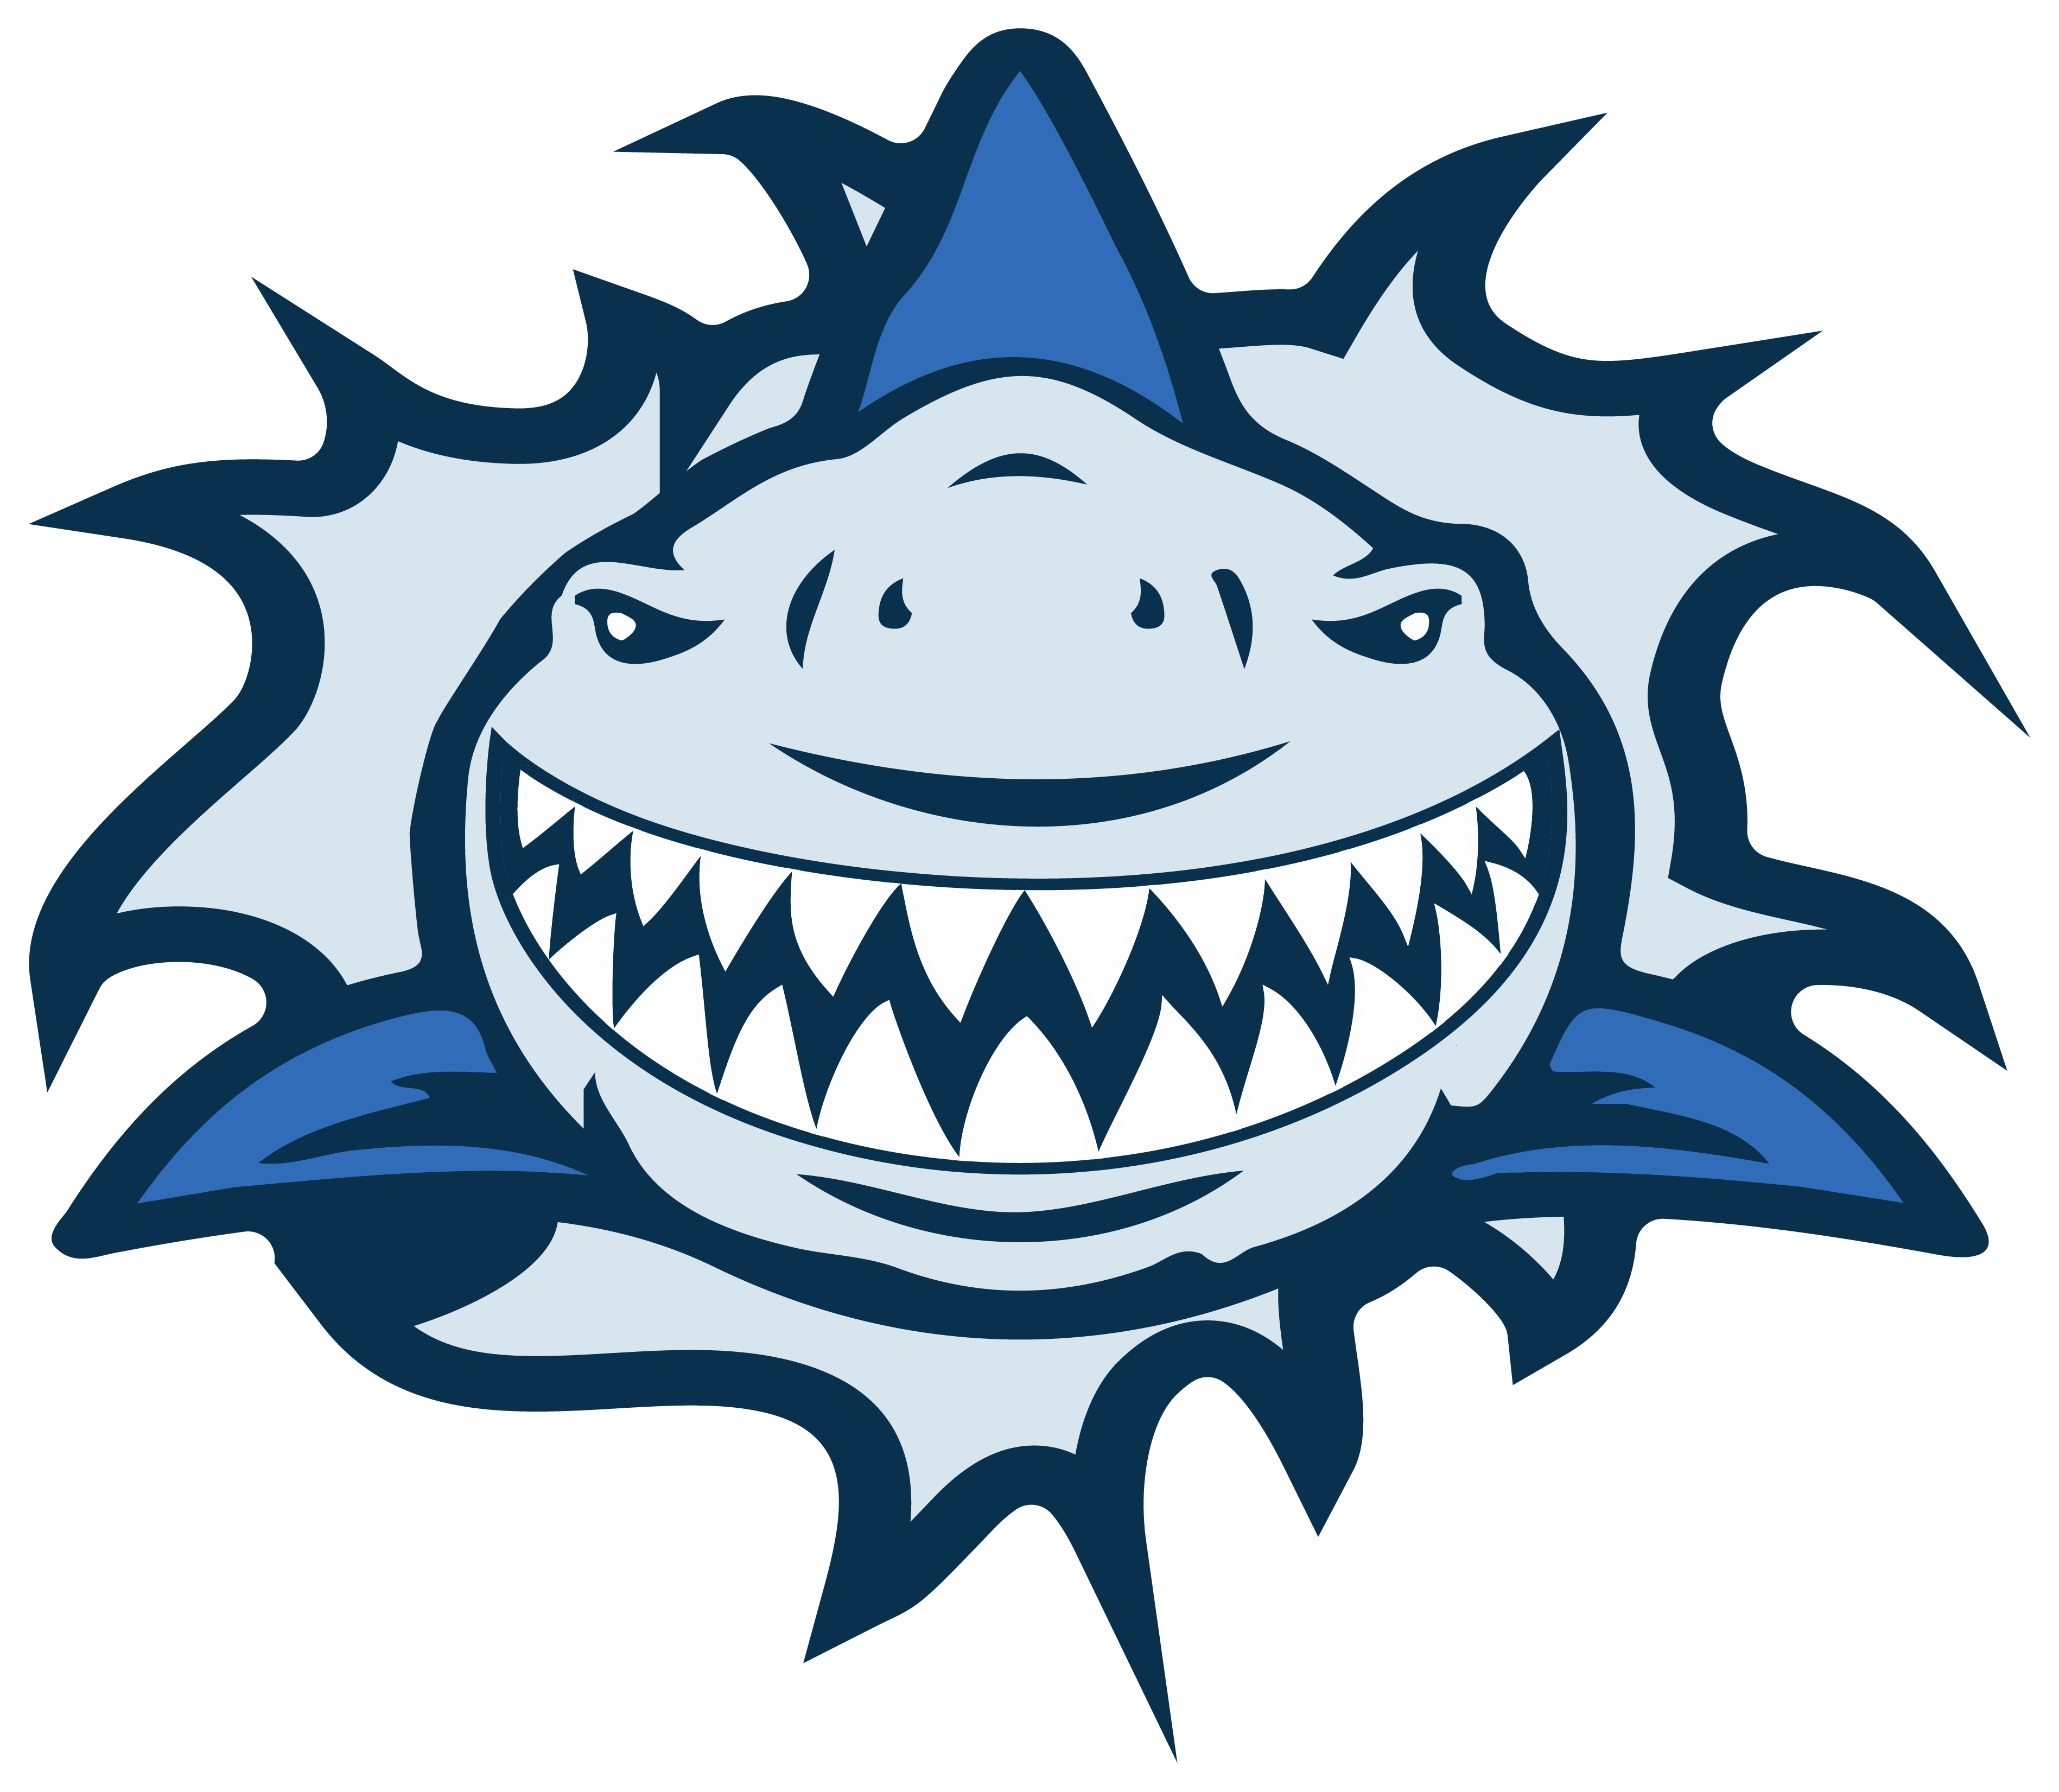 4x Aufkleber Shark Hai 6x6 cm für Auto KFZ Handy Laptop Haifisch von vorne Zähne